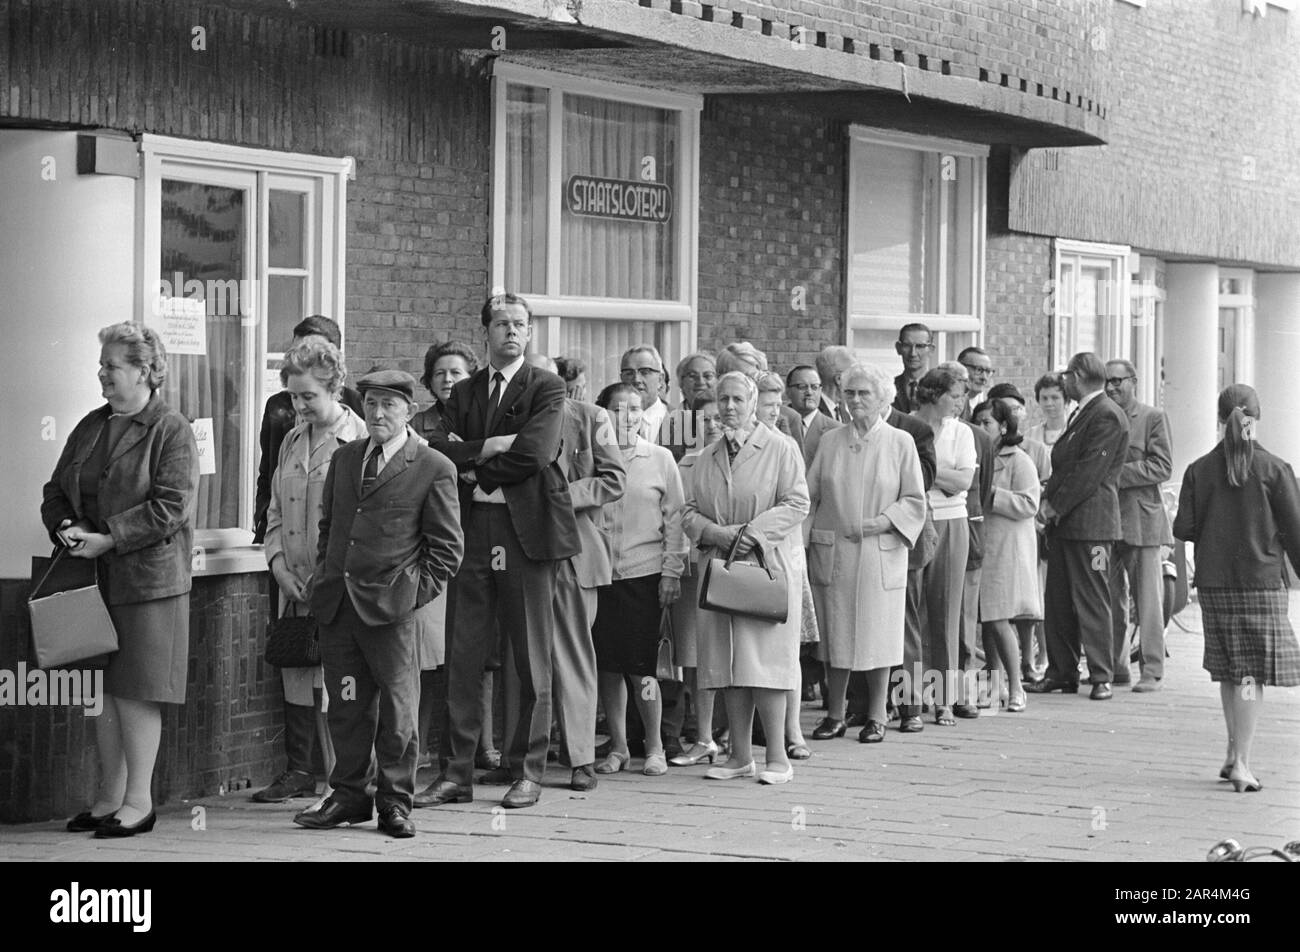 Une rangée de personnes attend un bureau de vente de serrures d'État Date: 9 septembre 1968 mots clés: Embouteillages, personnes Nom de l'institution: FC Twente Banque D'Images